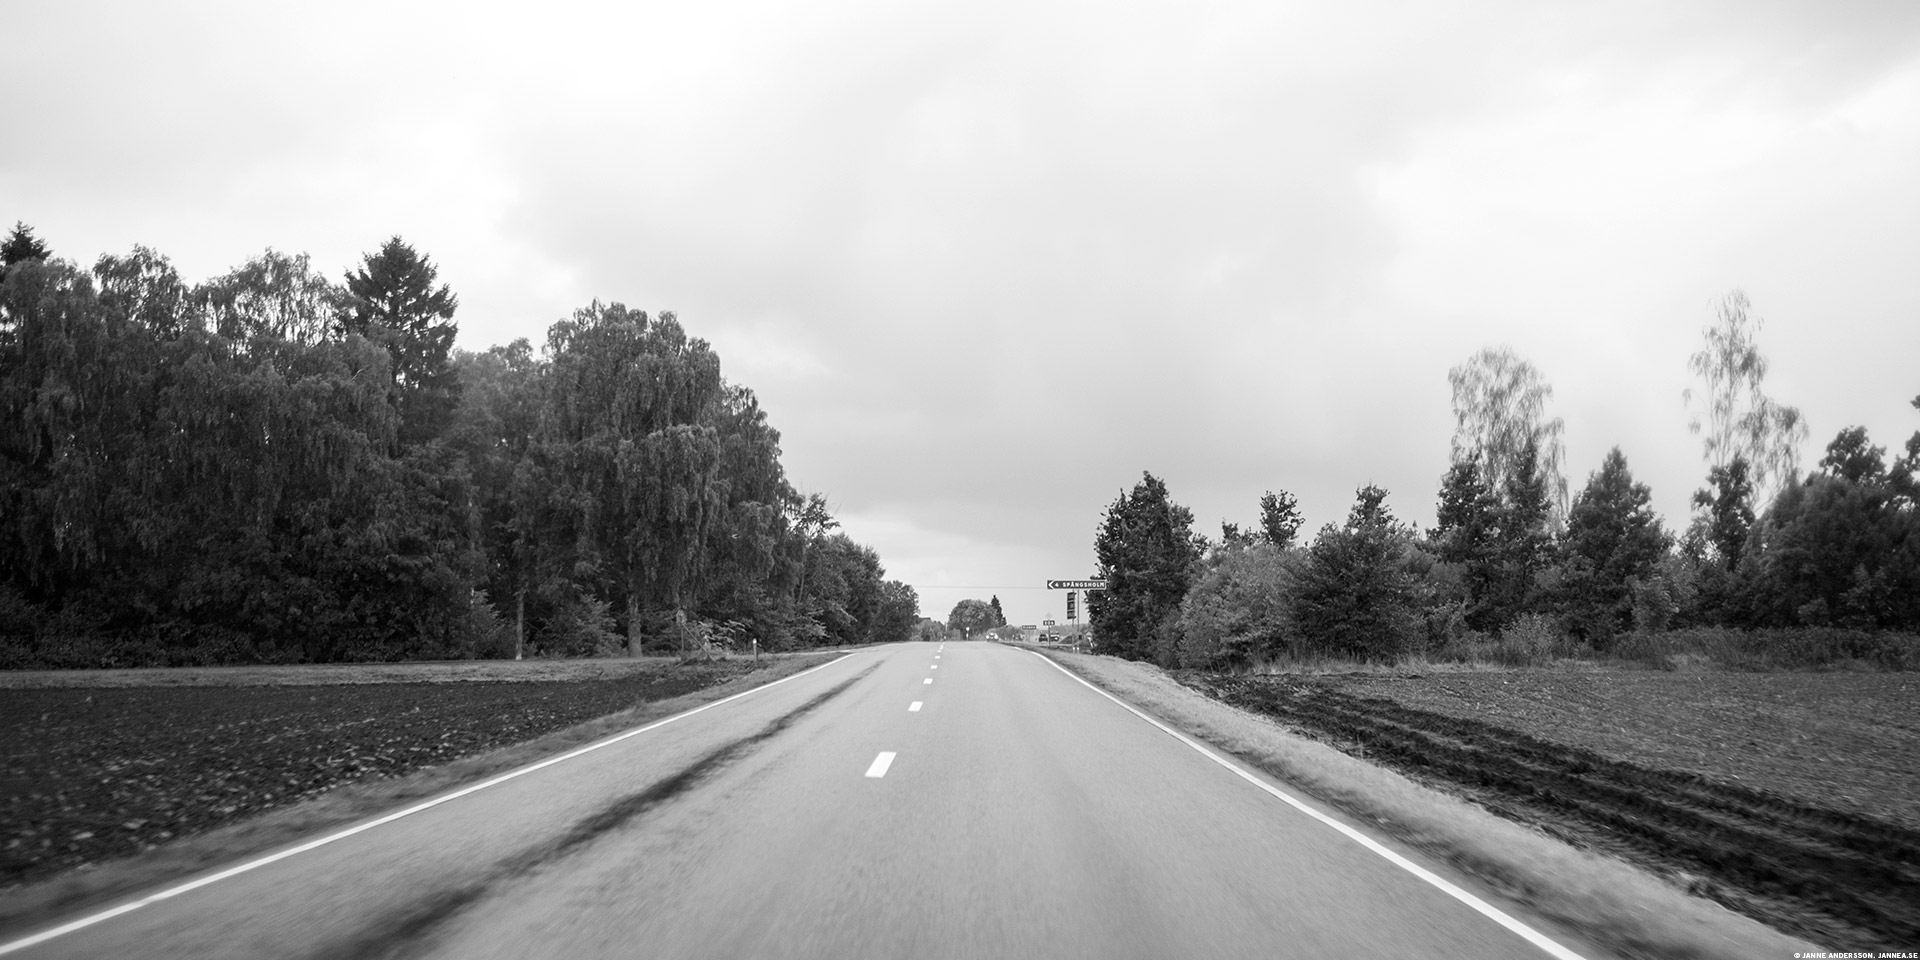 På vägen hem börjar det ösregna | © Janne A